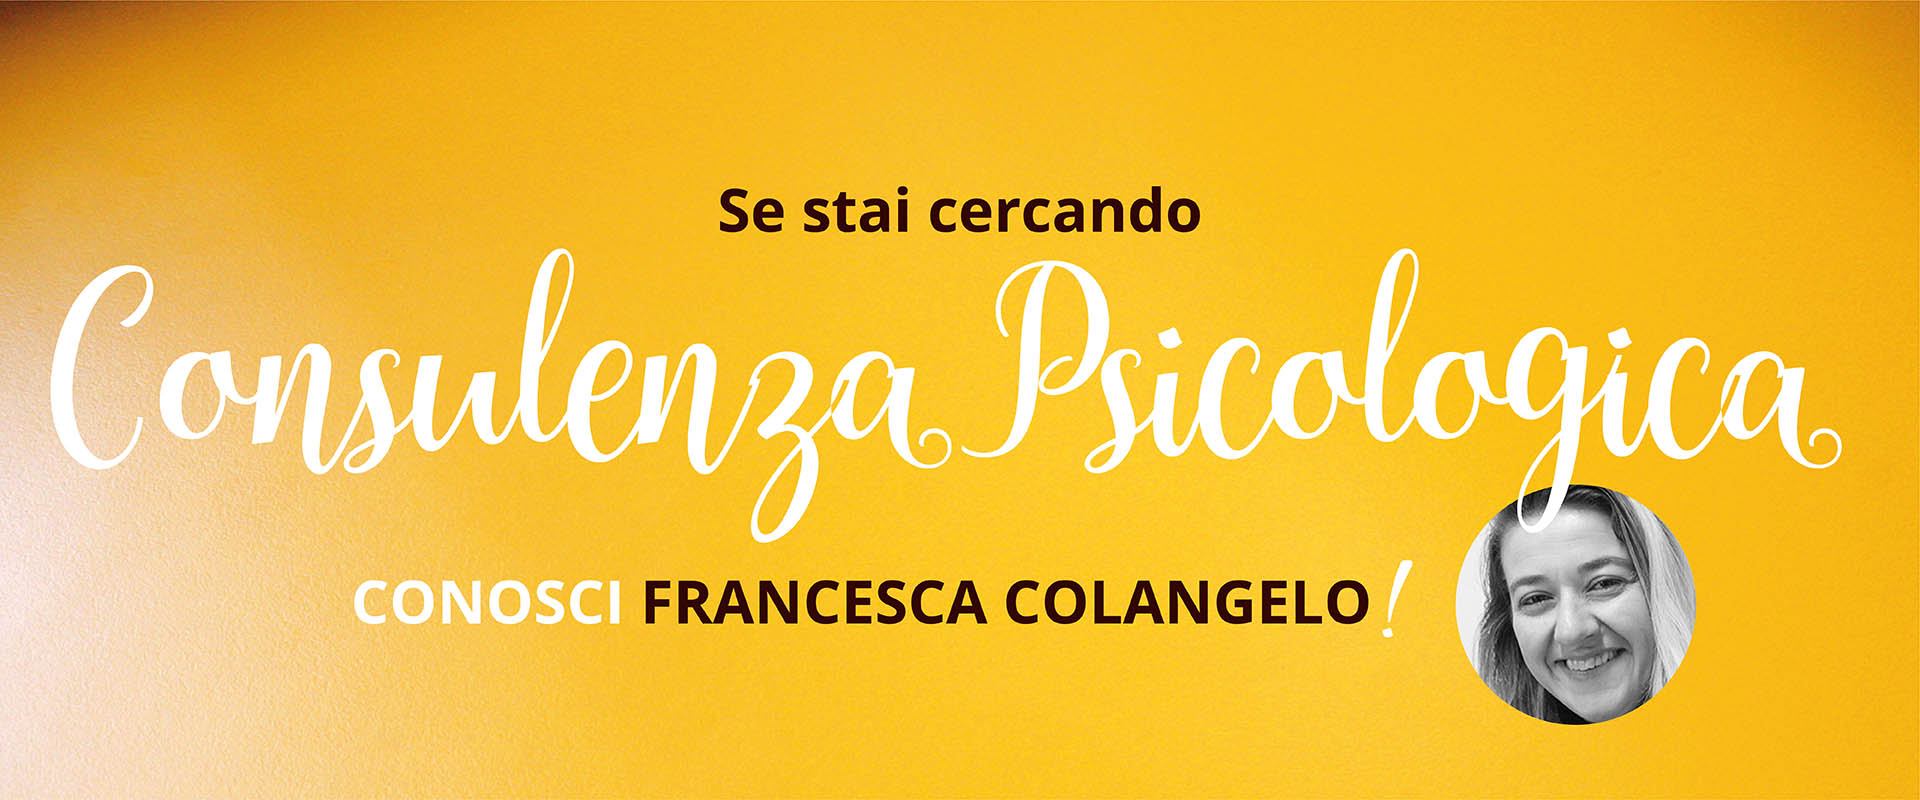 Spazio per me, Francesca Colangelo, Consulenza Psicologica.